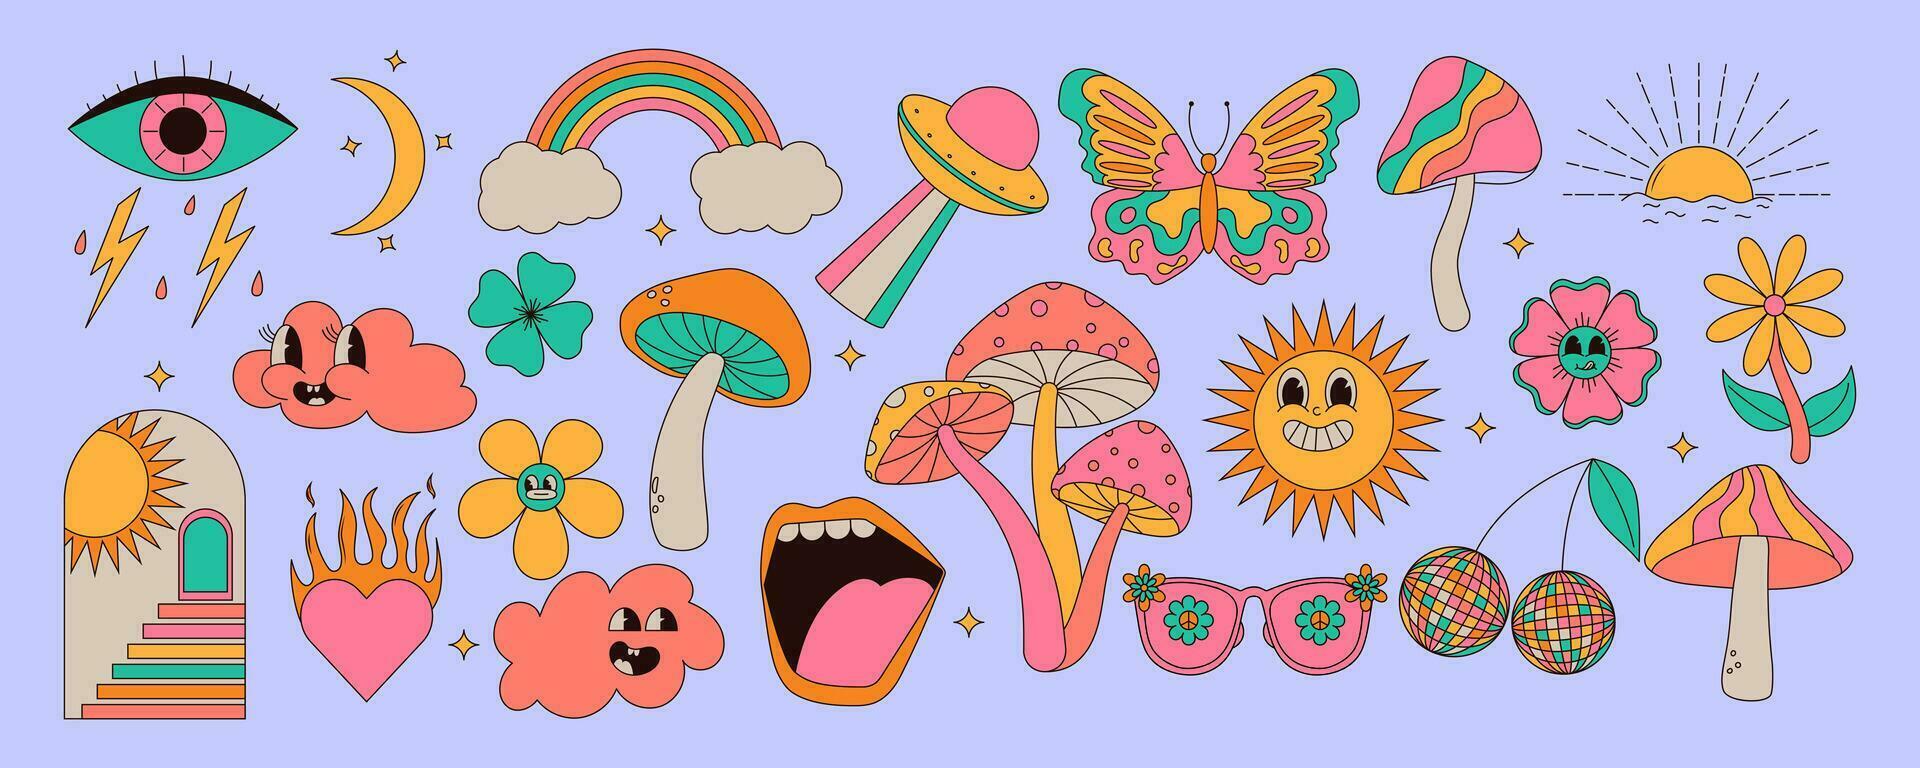 uppsättning av årgång häftig element. svamp, Sol, blomma, mun, ögon, solglasögon och etc. klistermärke packa i hippie 70s stil. vektor illustration